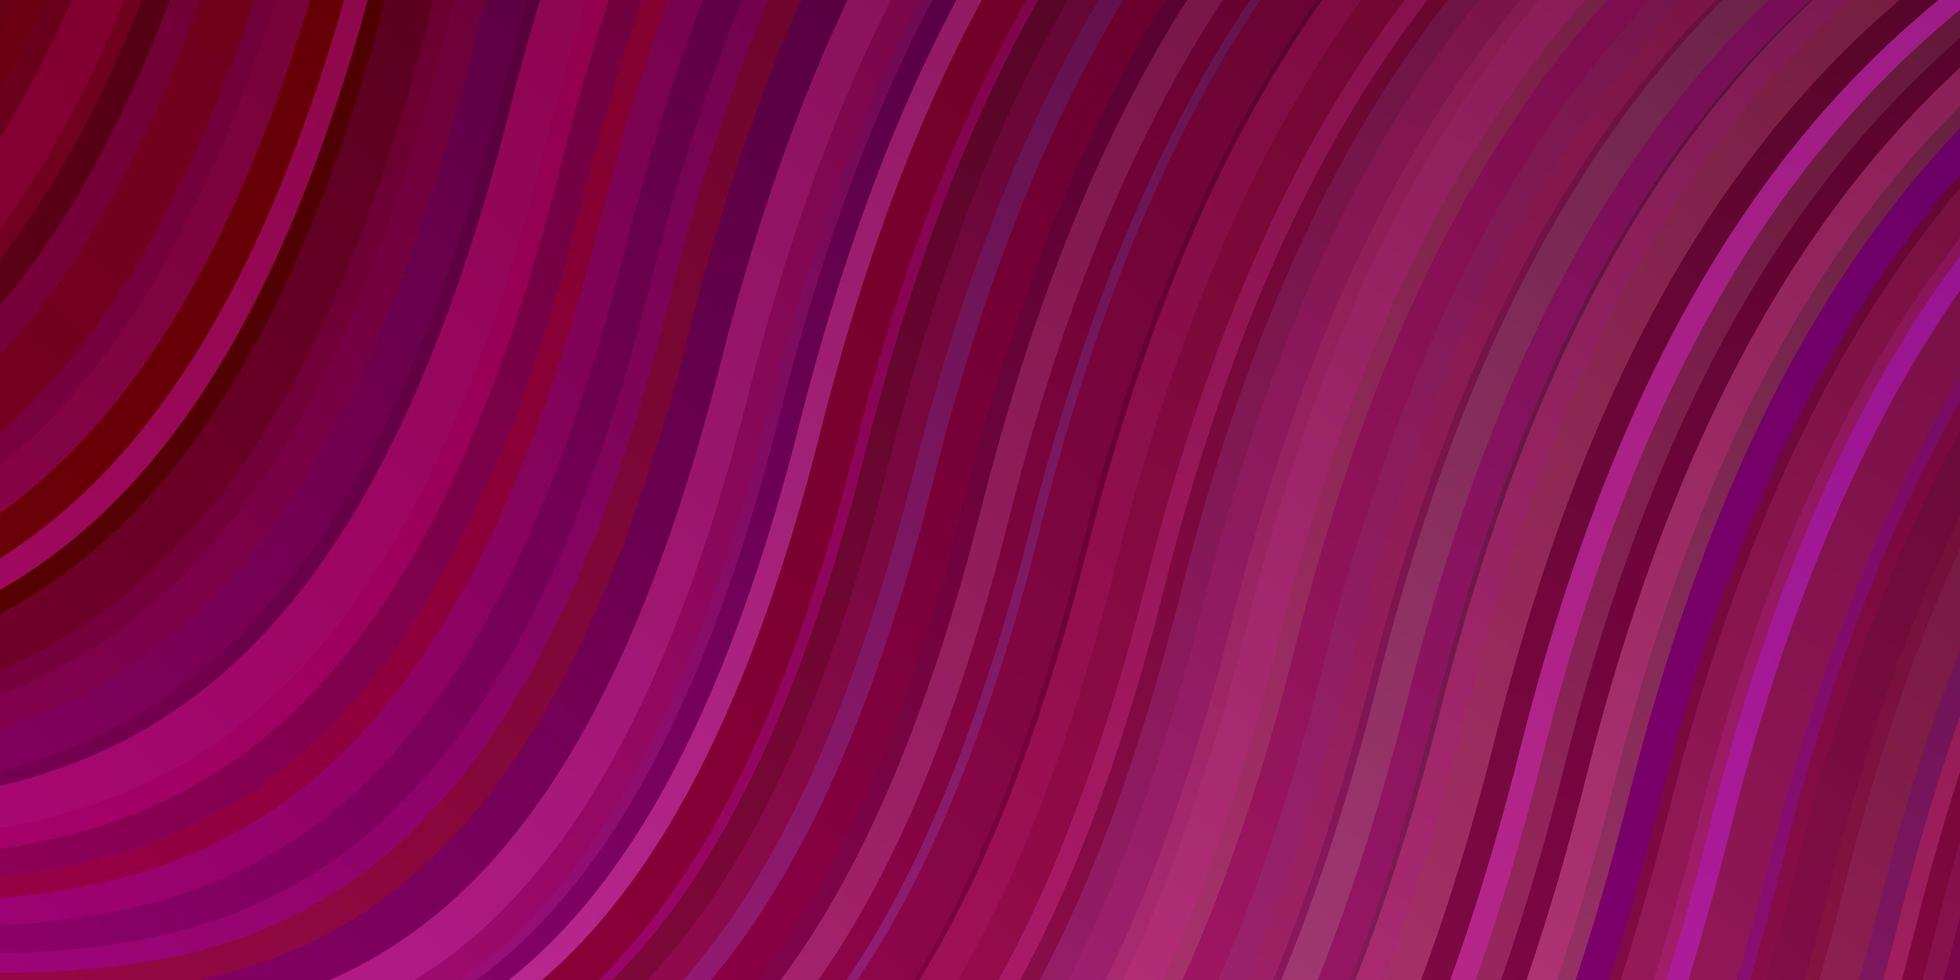 donkerpaars, roze vector sjabloon met curven.